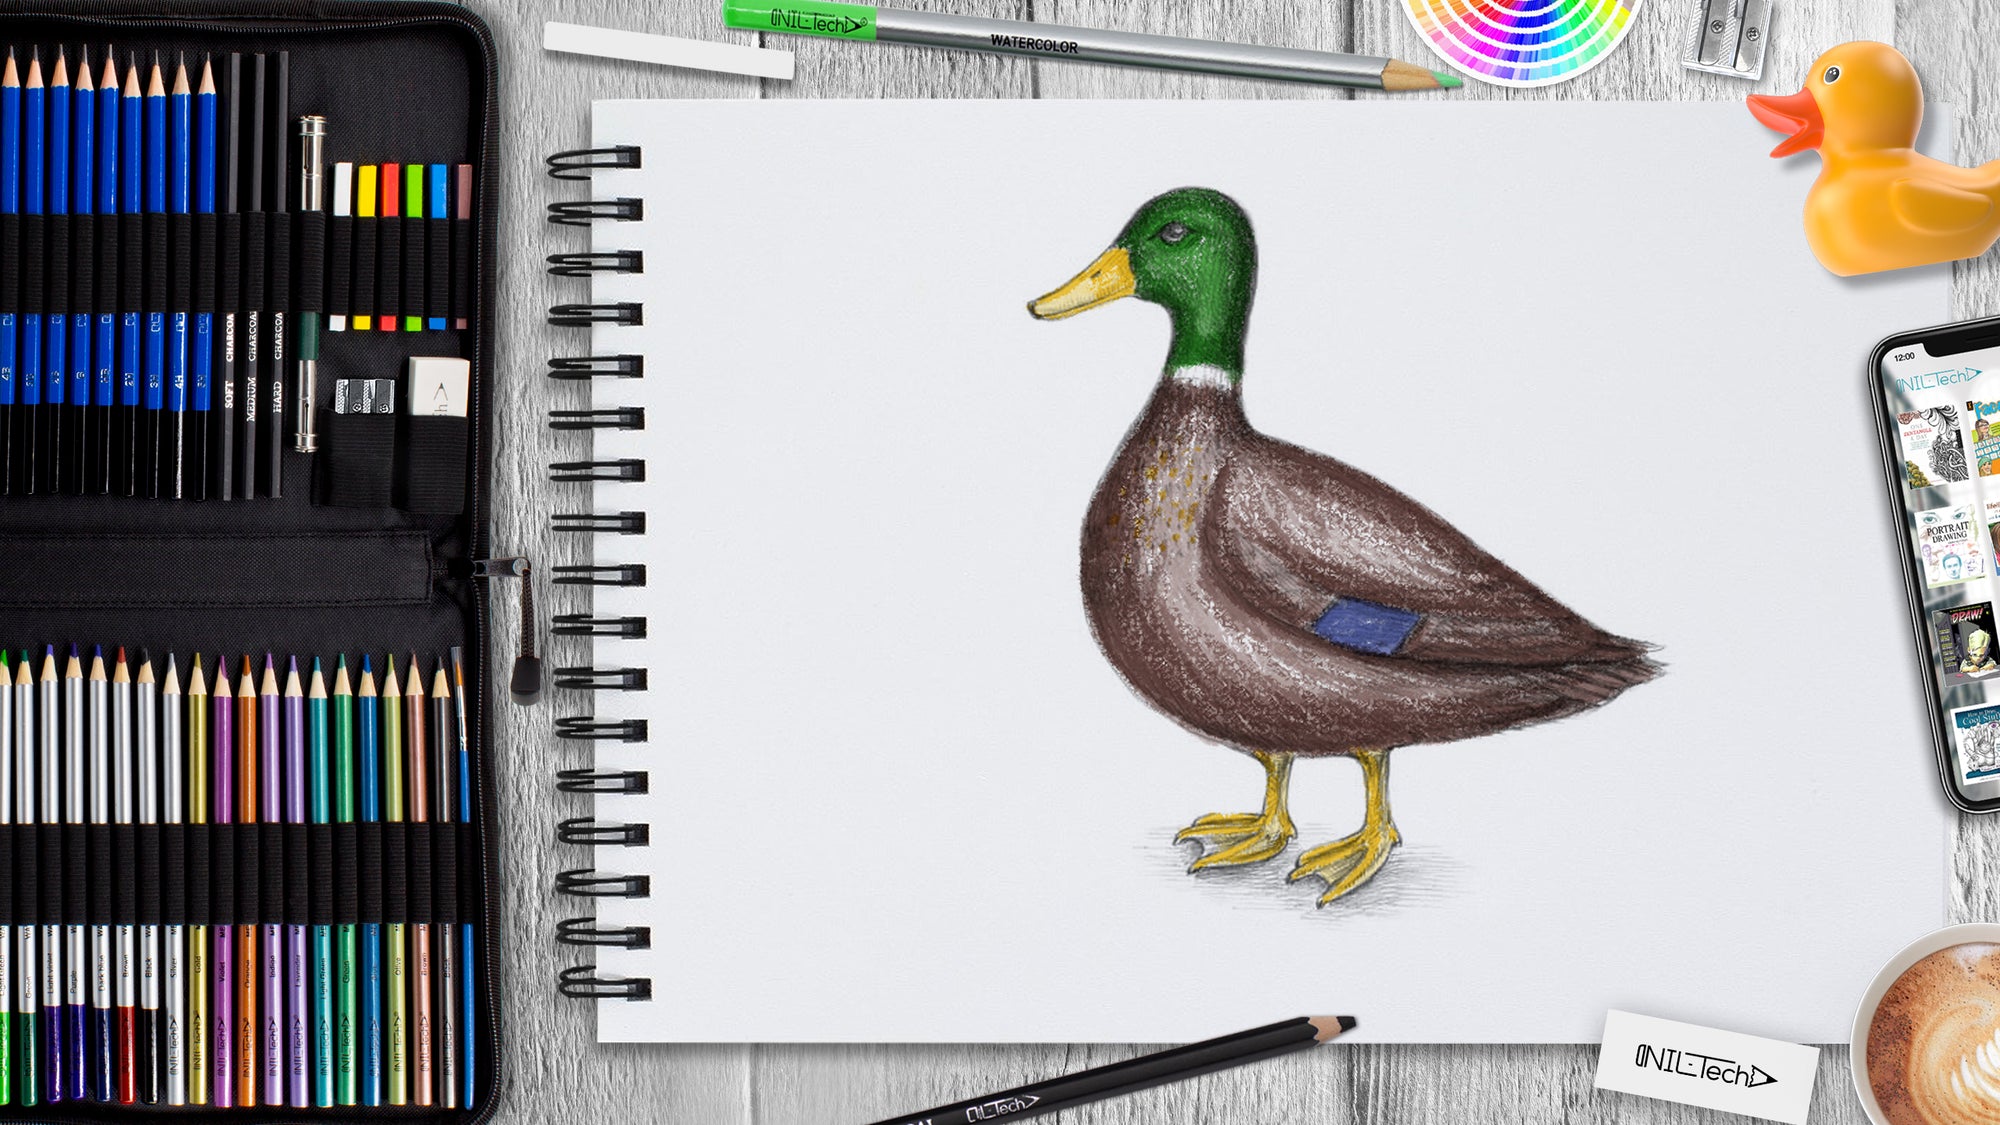 17772 Duck Sketches Images Stock Photos  Vectors  Shutterstock